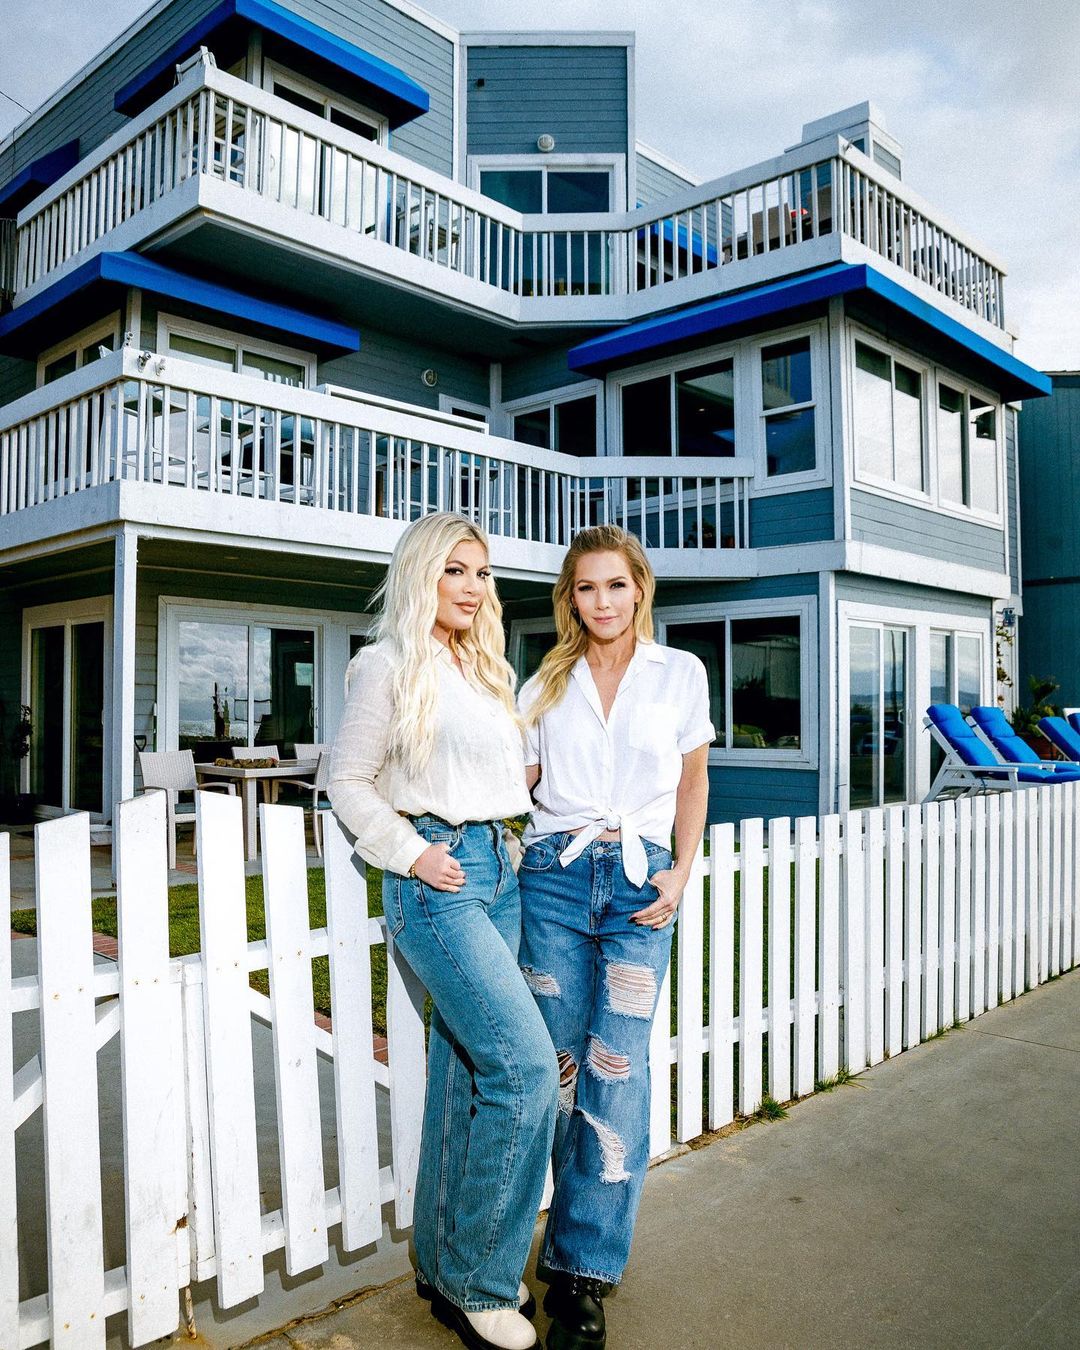 Η Tori Spelling και η Jennie Garth επέστρεψαν στο σπίτι του Beverly Hills μετά από 20 χρόνια